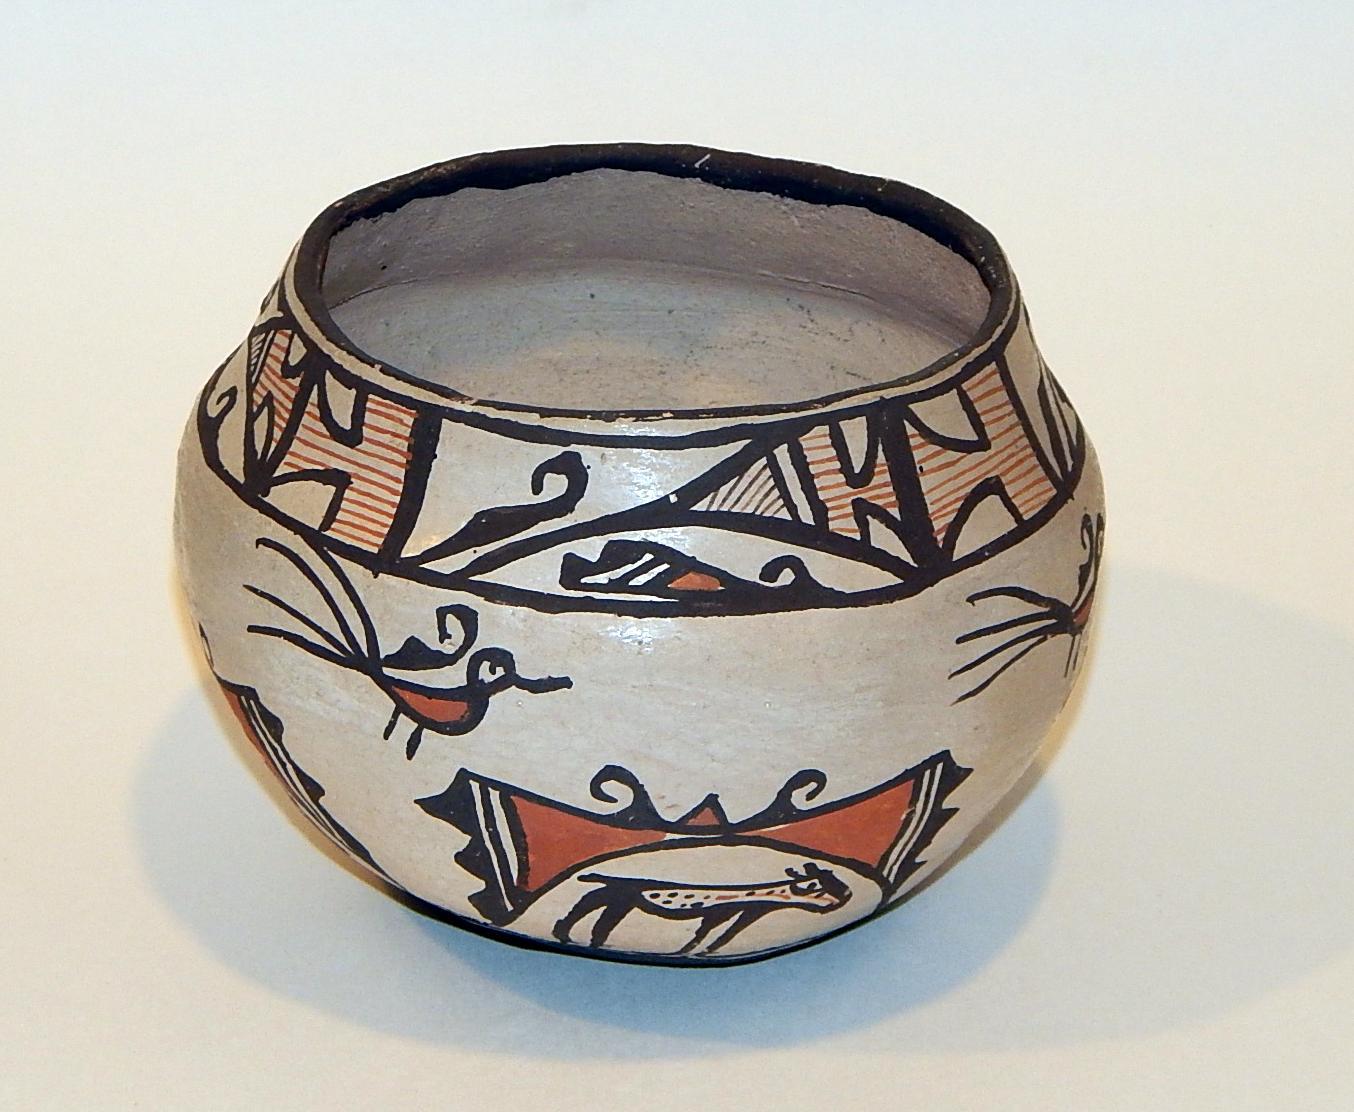 Zuni verzierte Keramikkanne
handbemalt mit Heartline-Hirschmotiv
Maße: 4 ½